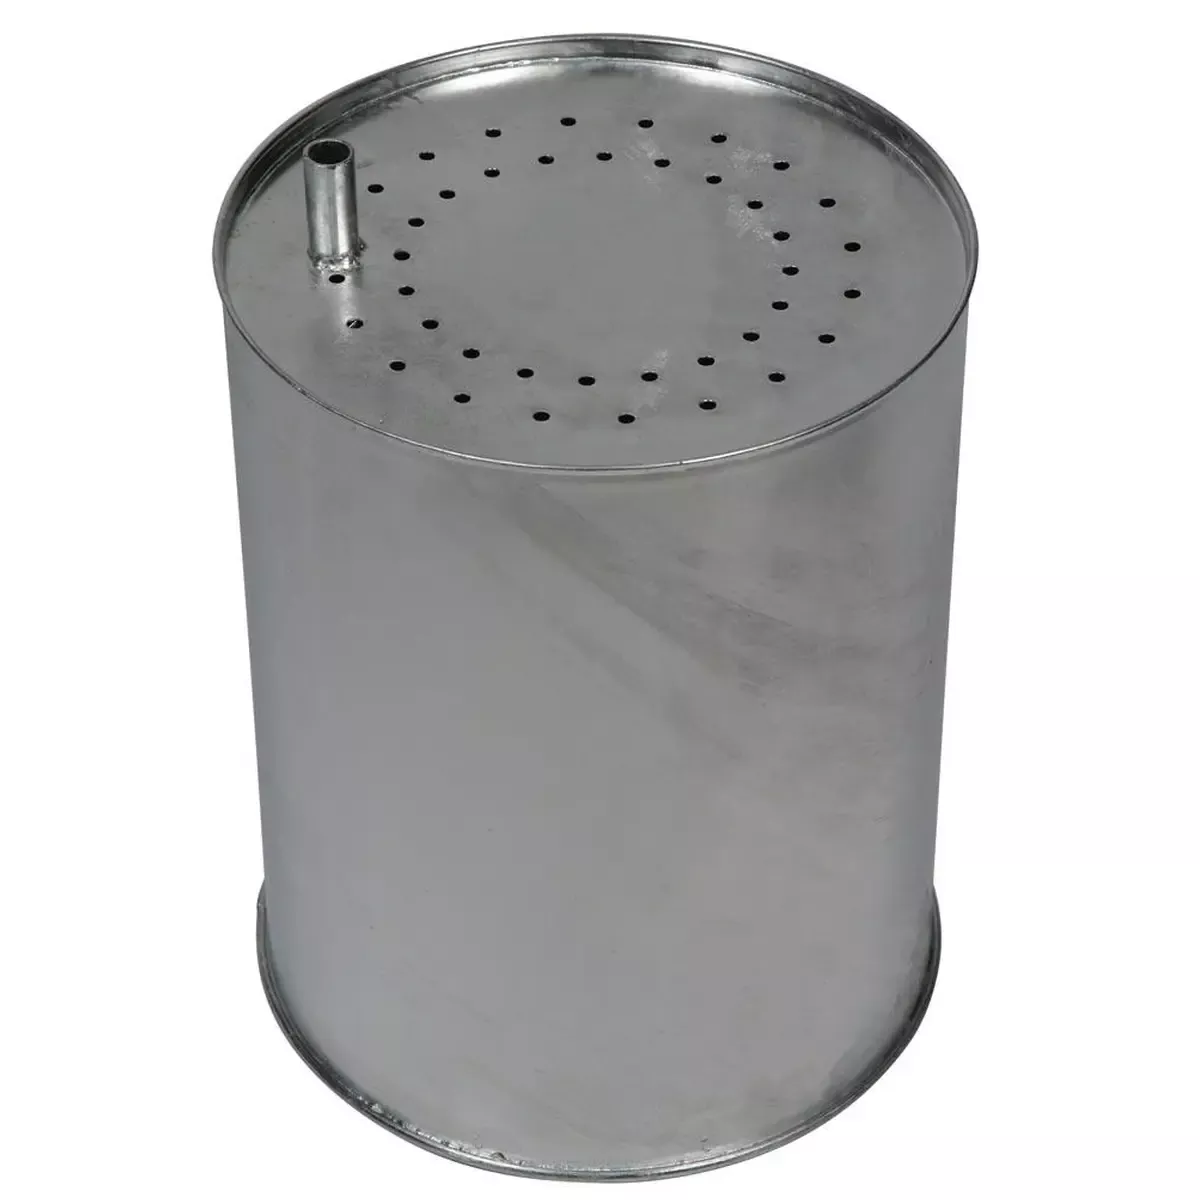 Einsatzbehälter für Stand Abfallbehälter DxH 325x 445 mm, mit Grifftasche, gelochter Boden